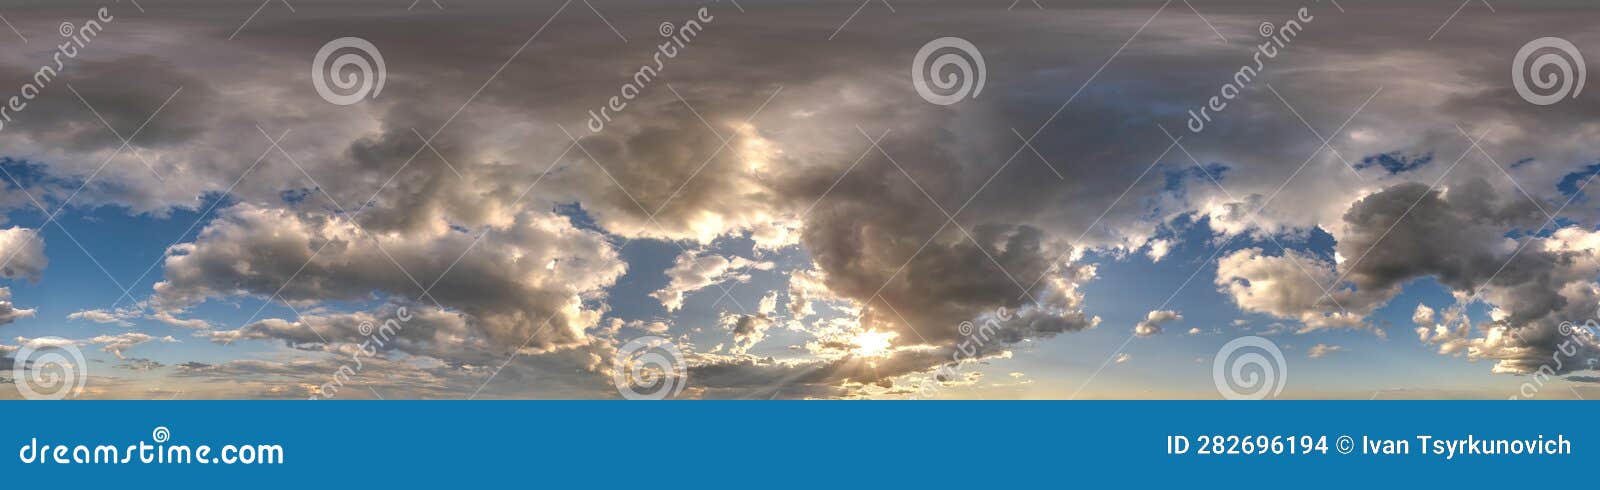 Skydome do pôr do sol com nuvens noturnas como visão panorâmica